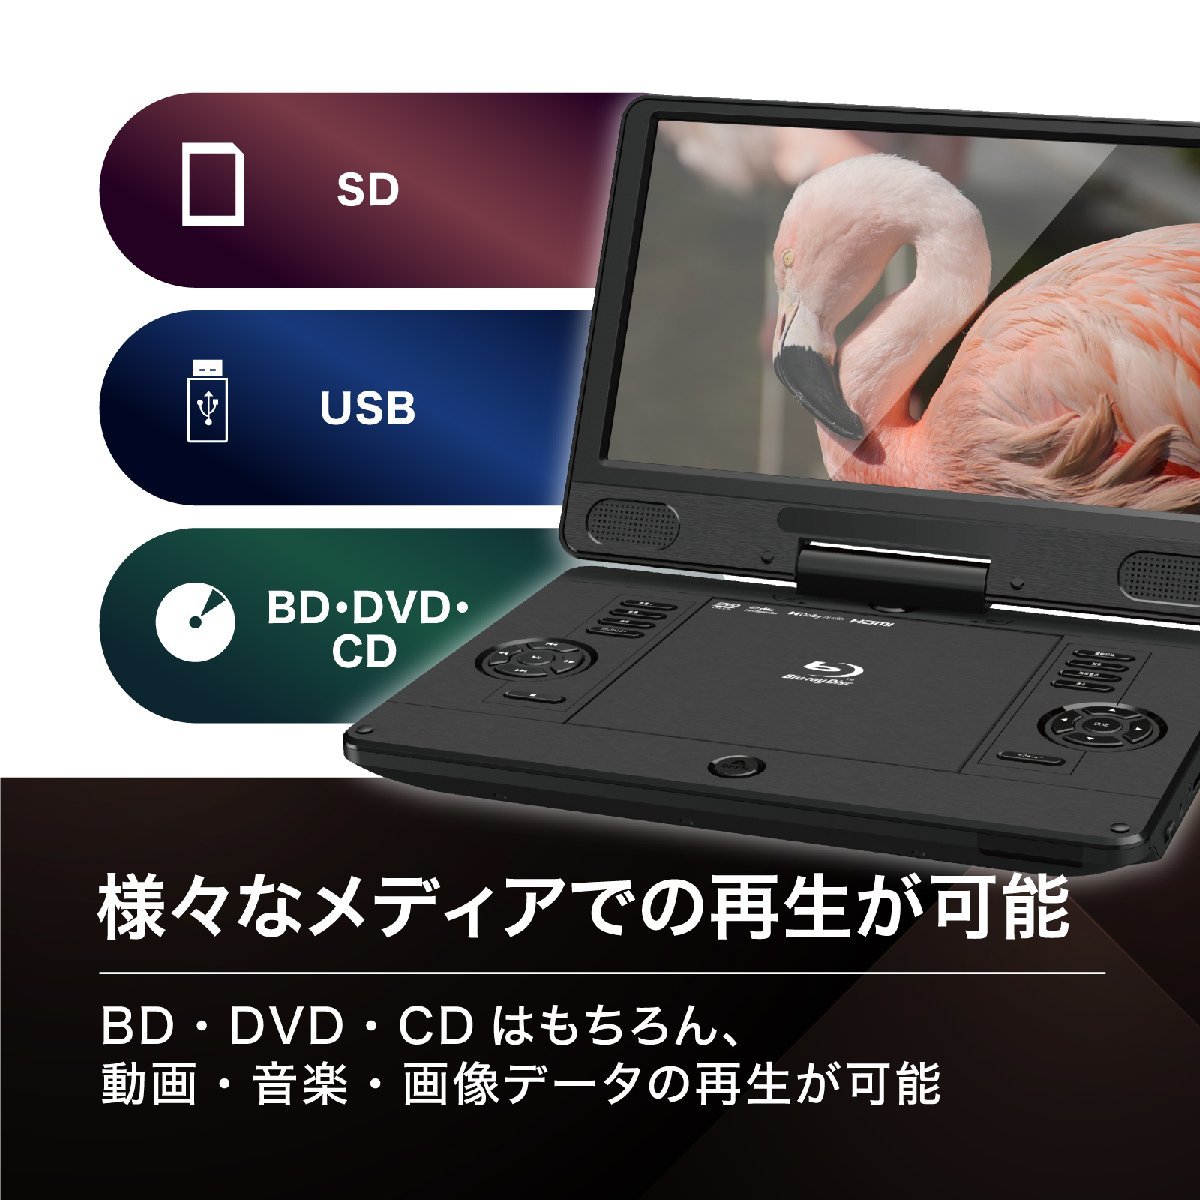 BLUEWIDE 11.6 дюймовый портативный Blue-ray плеер BD-LIVE зарядка аккумулятор CPRM 3 источник питания японский язык 